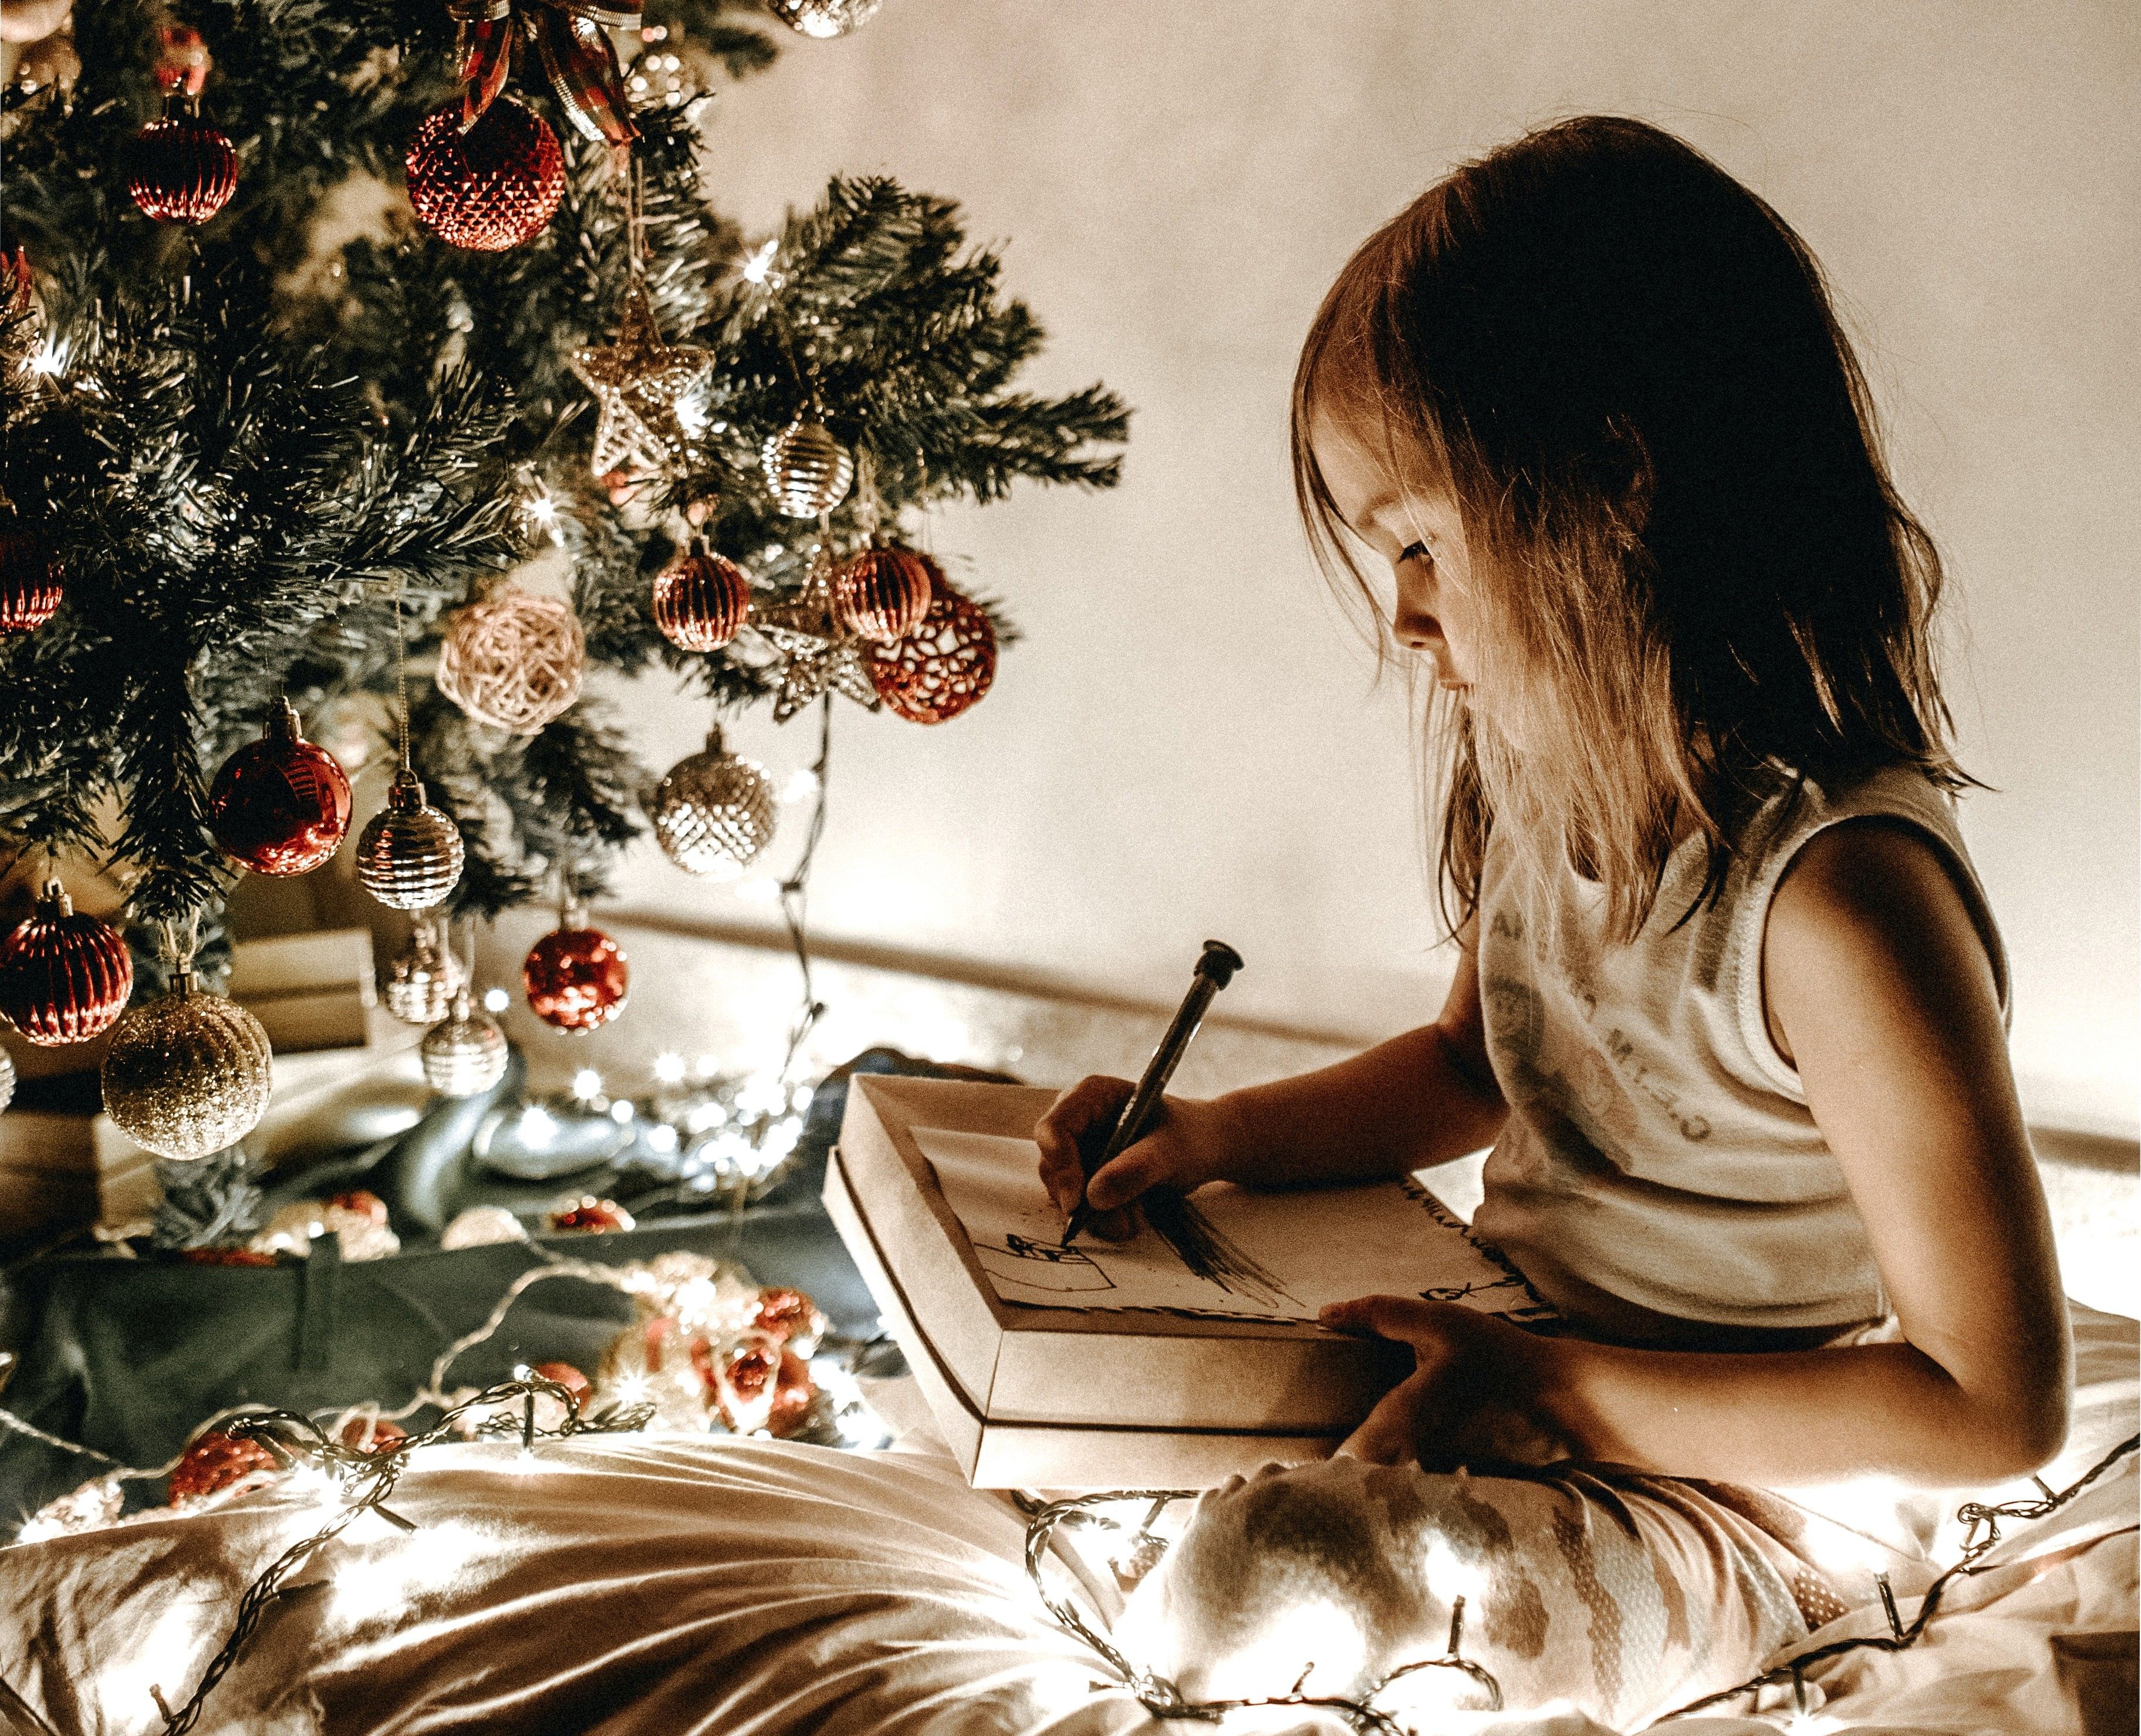 A girl writing a list for Santa.